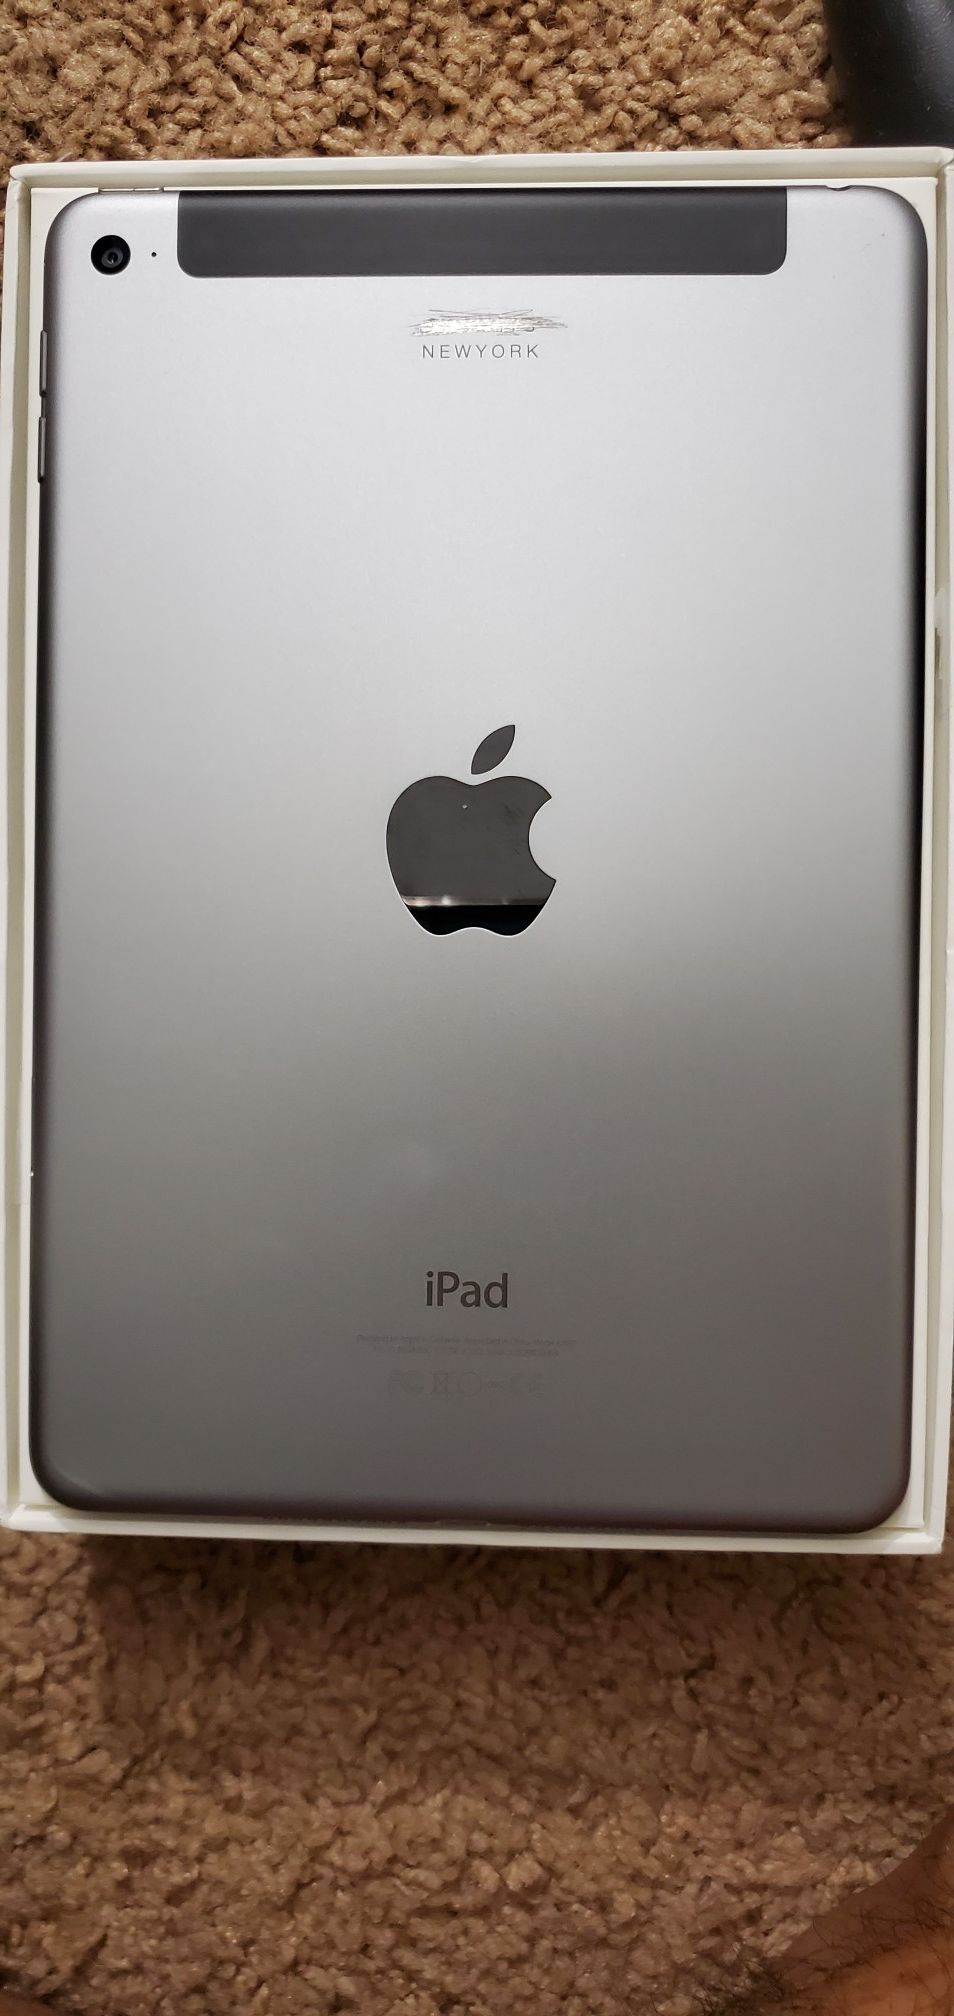 iPad mini 4 iCloud unlocked carrier unlocked